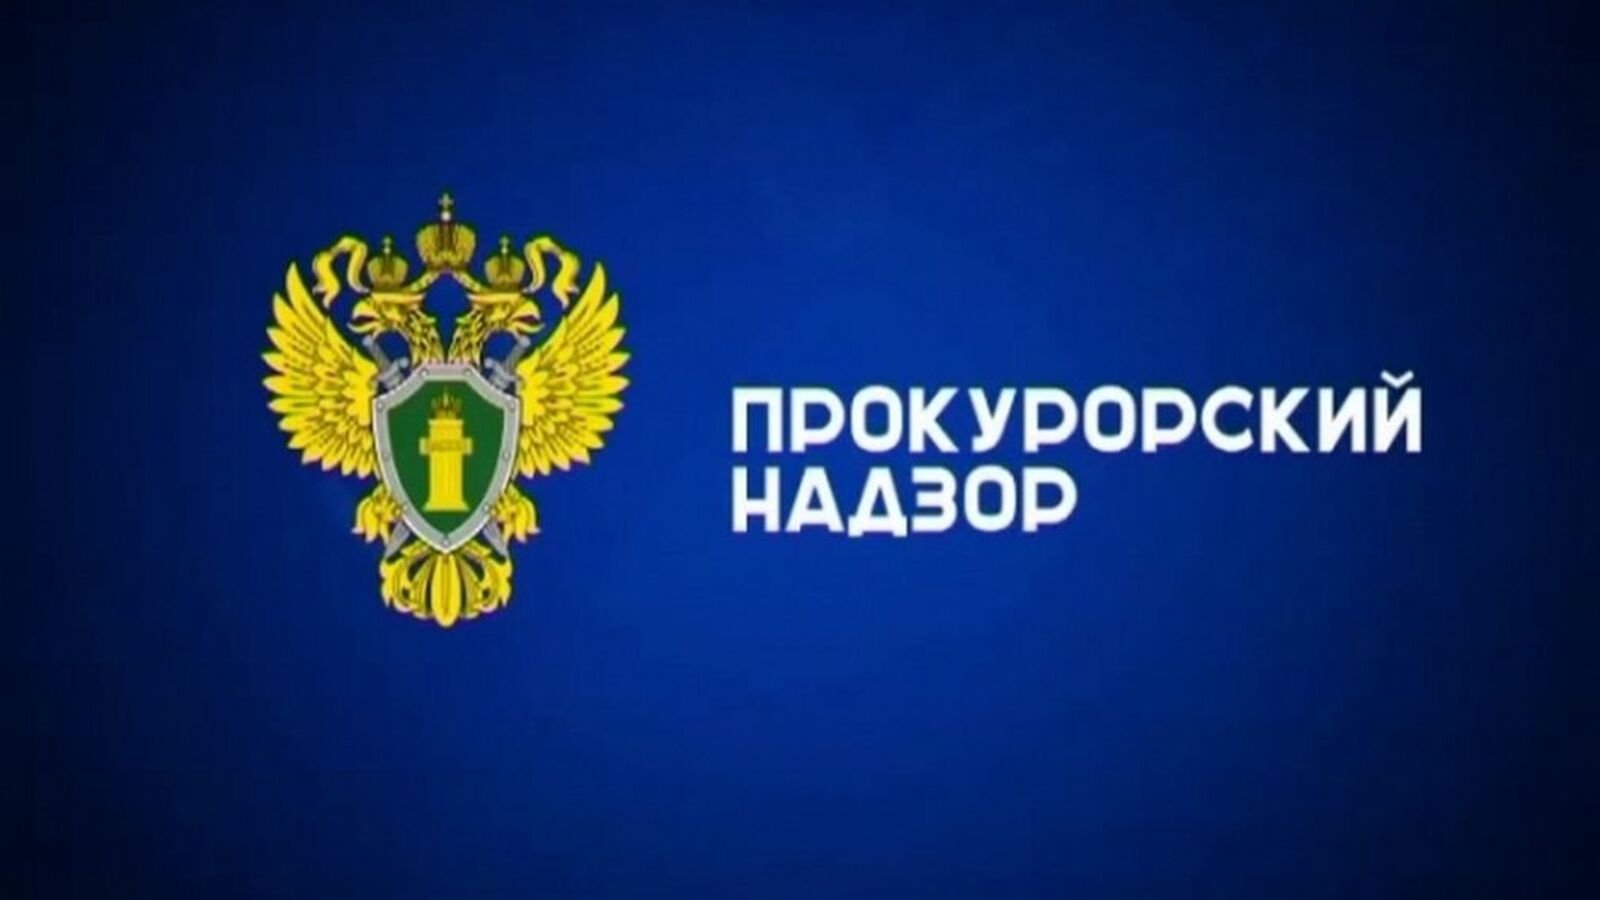 По требованию прокуратуры Красногвардейского района ликвидирована несанкционированная свалка.